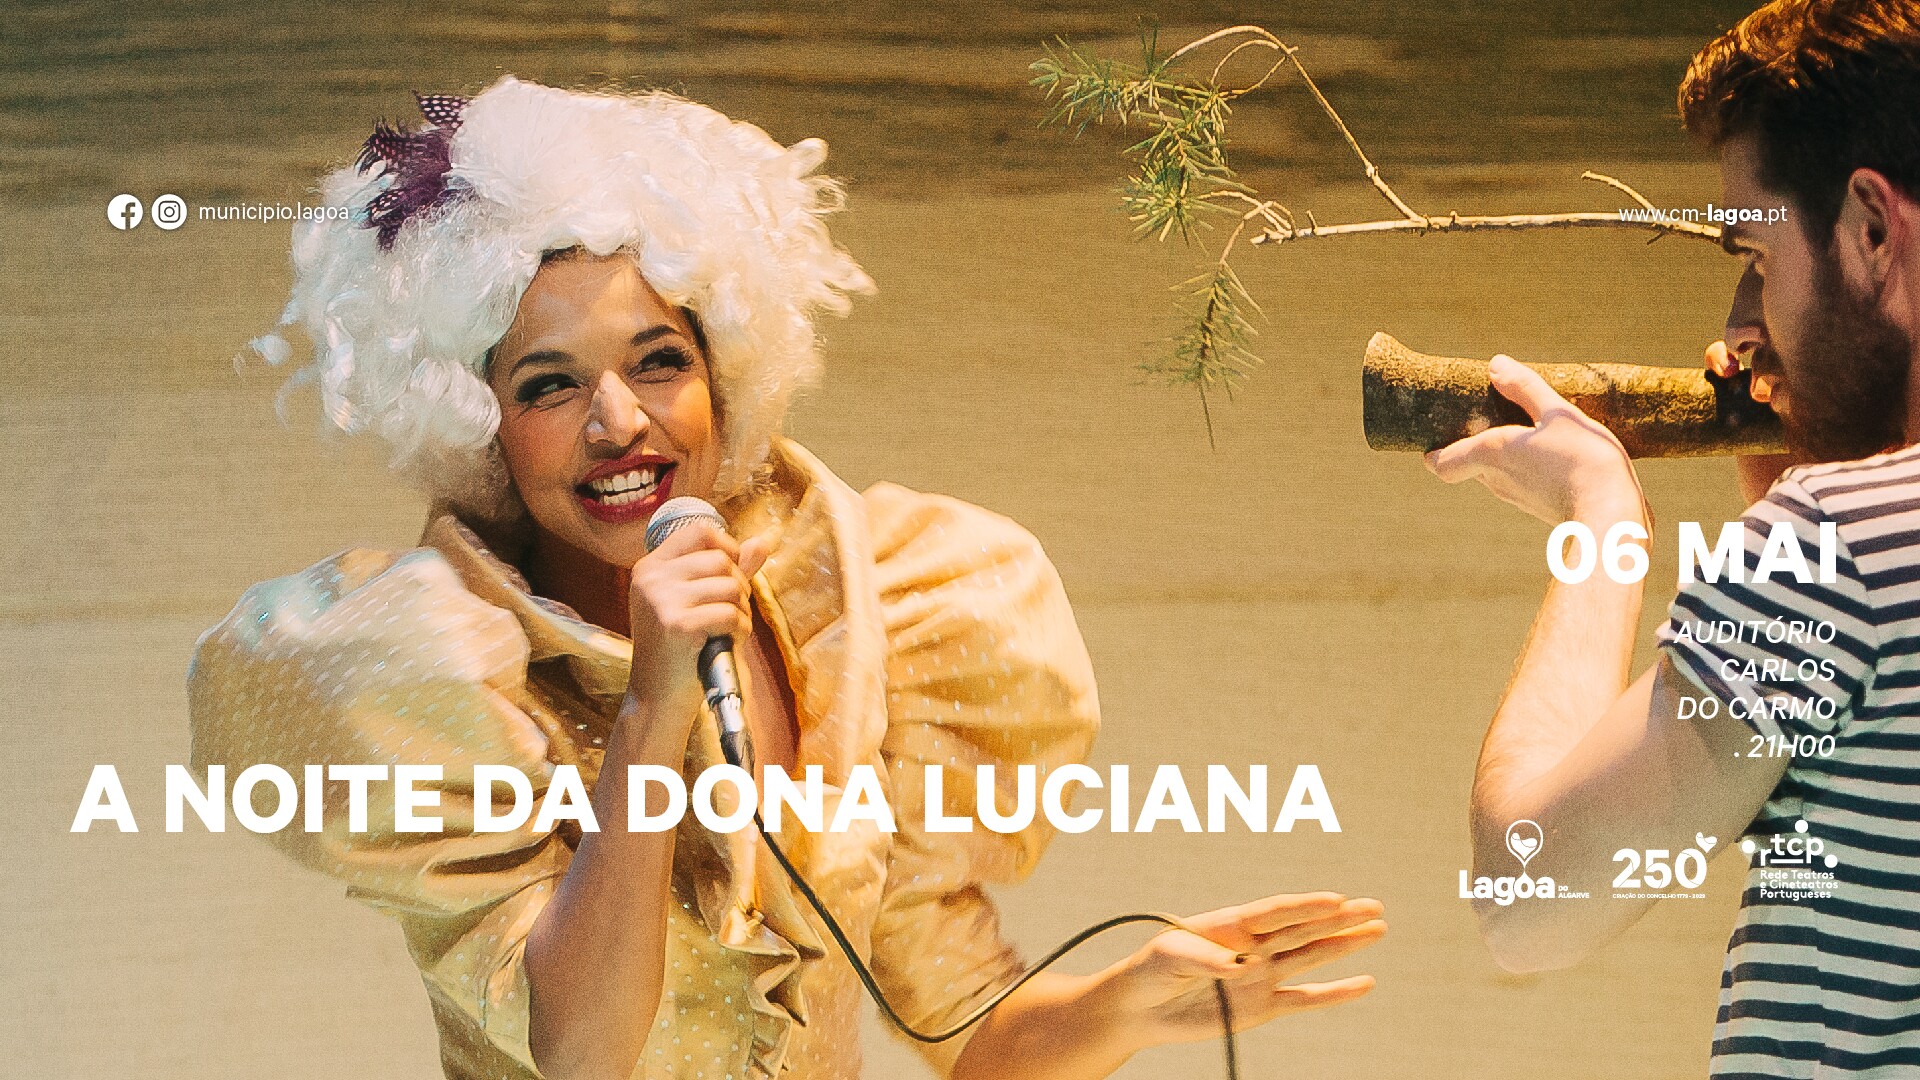 "A Noite da Dona Luciana"